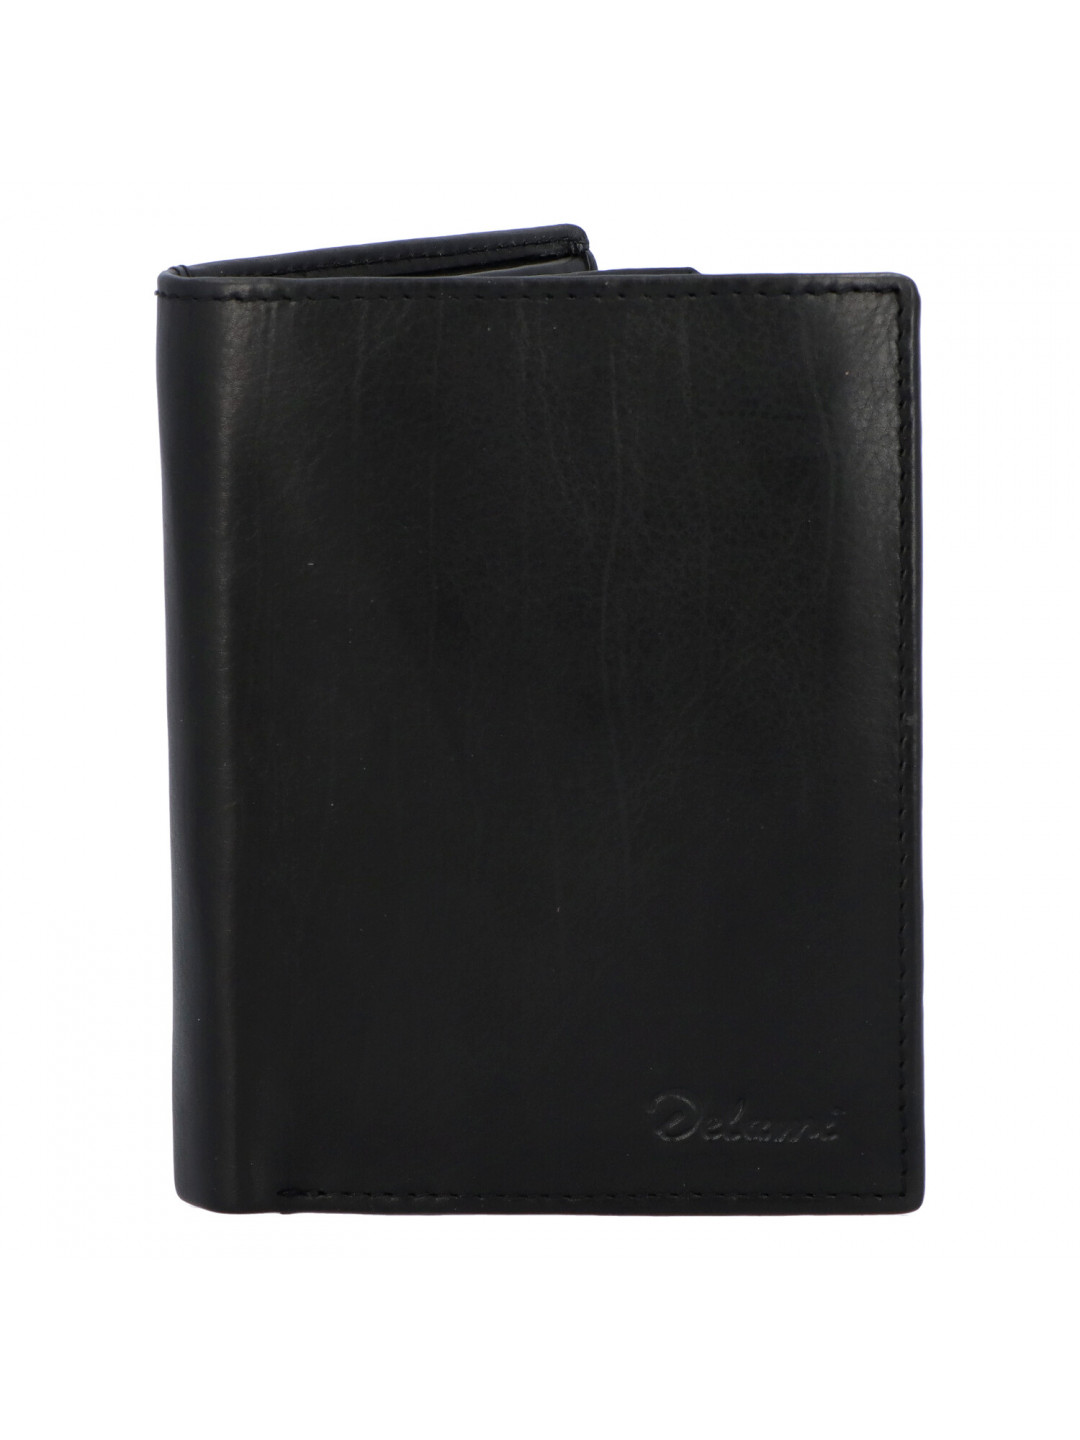 Pánská kožená peněženka černá – Delami 8702